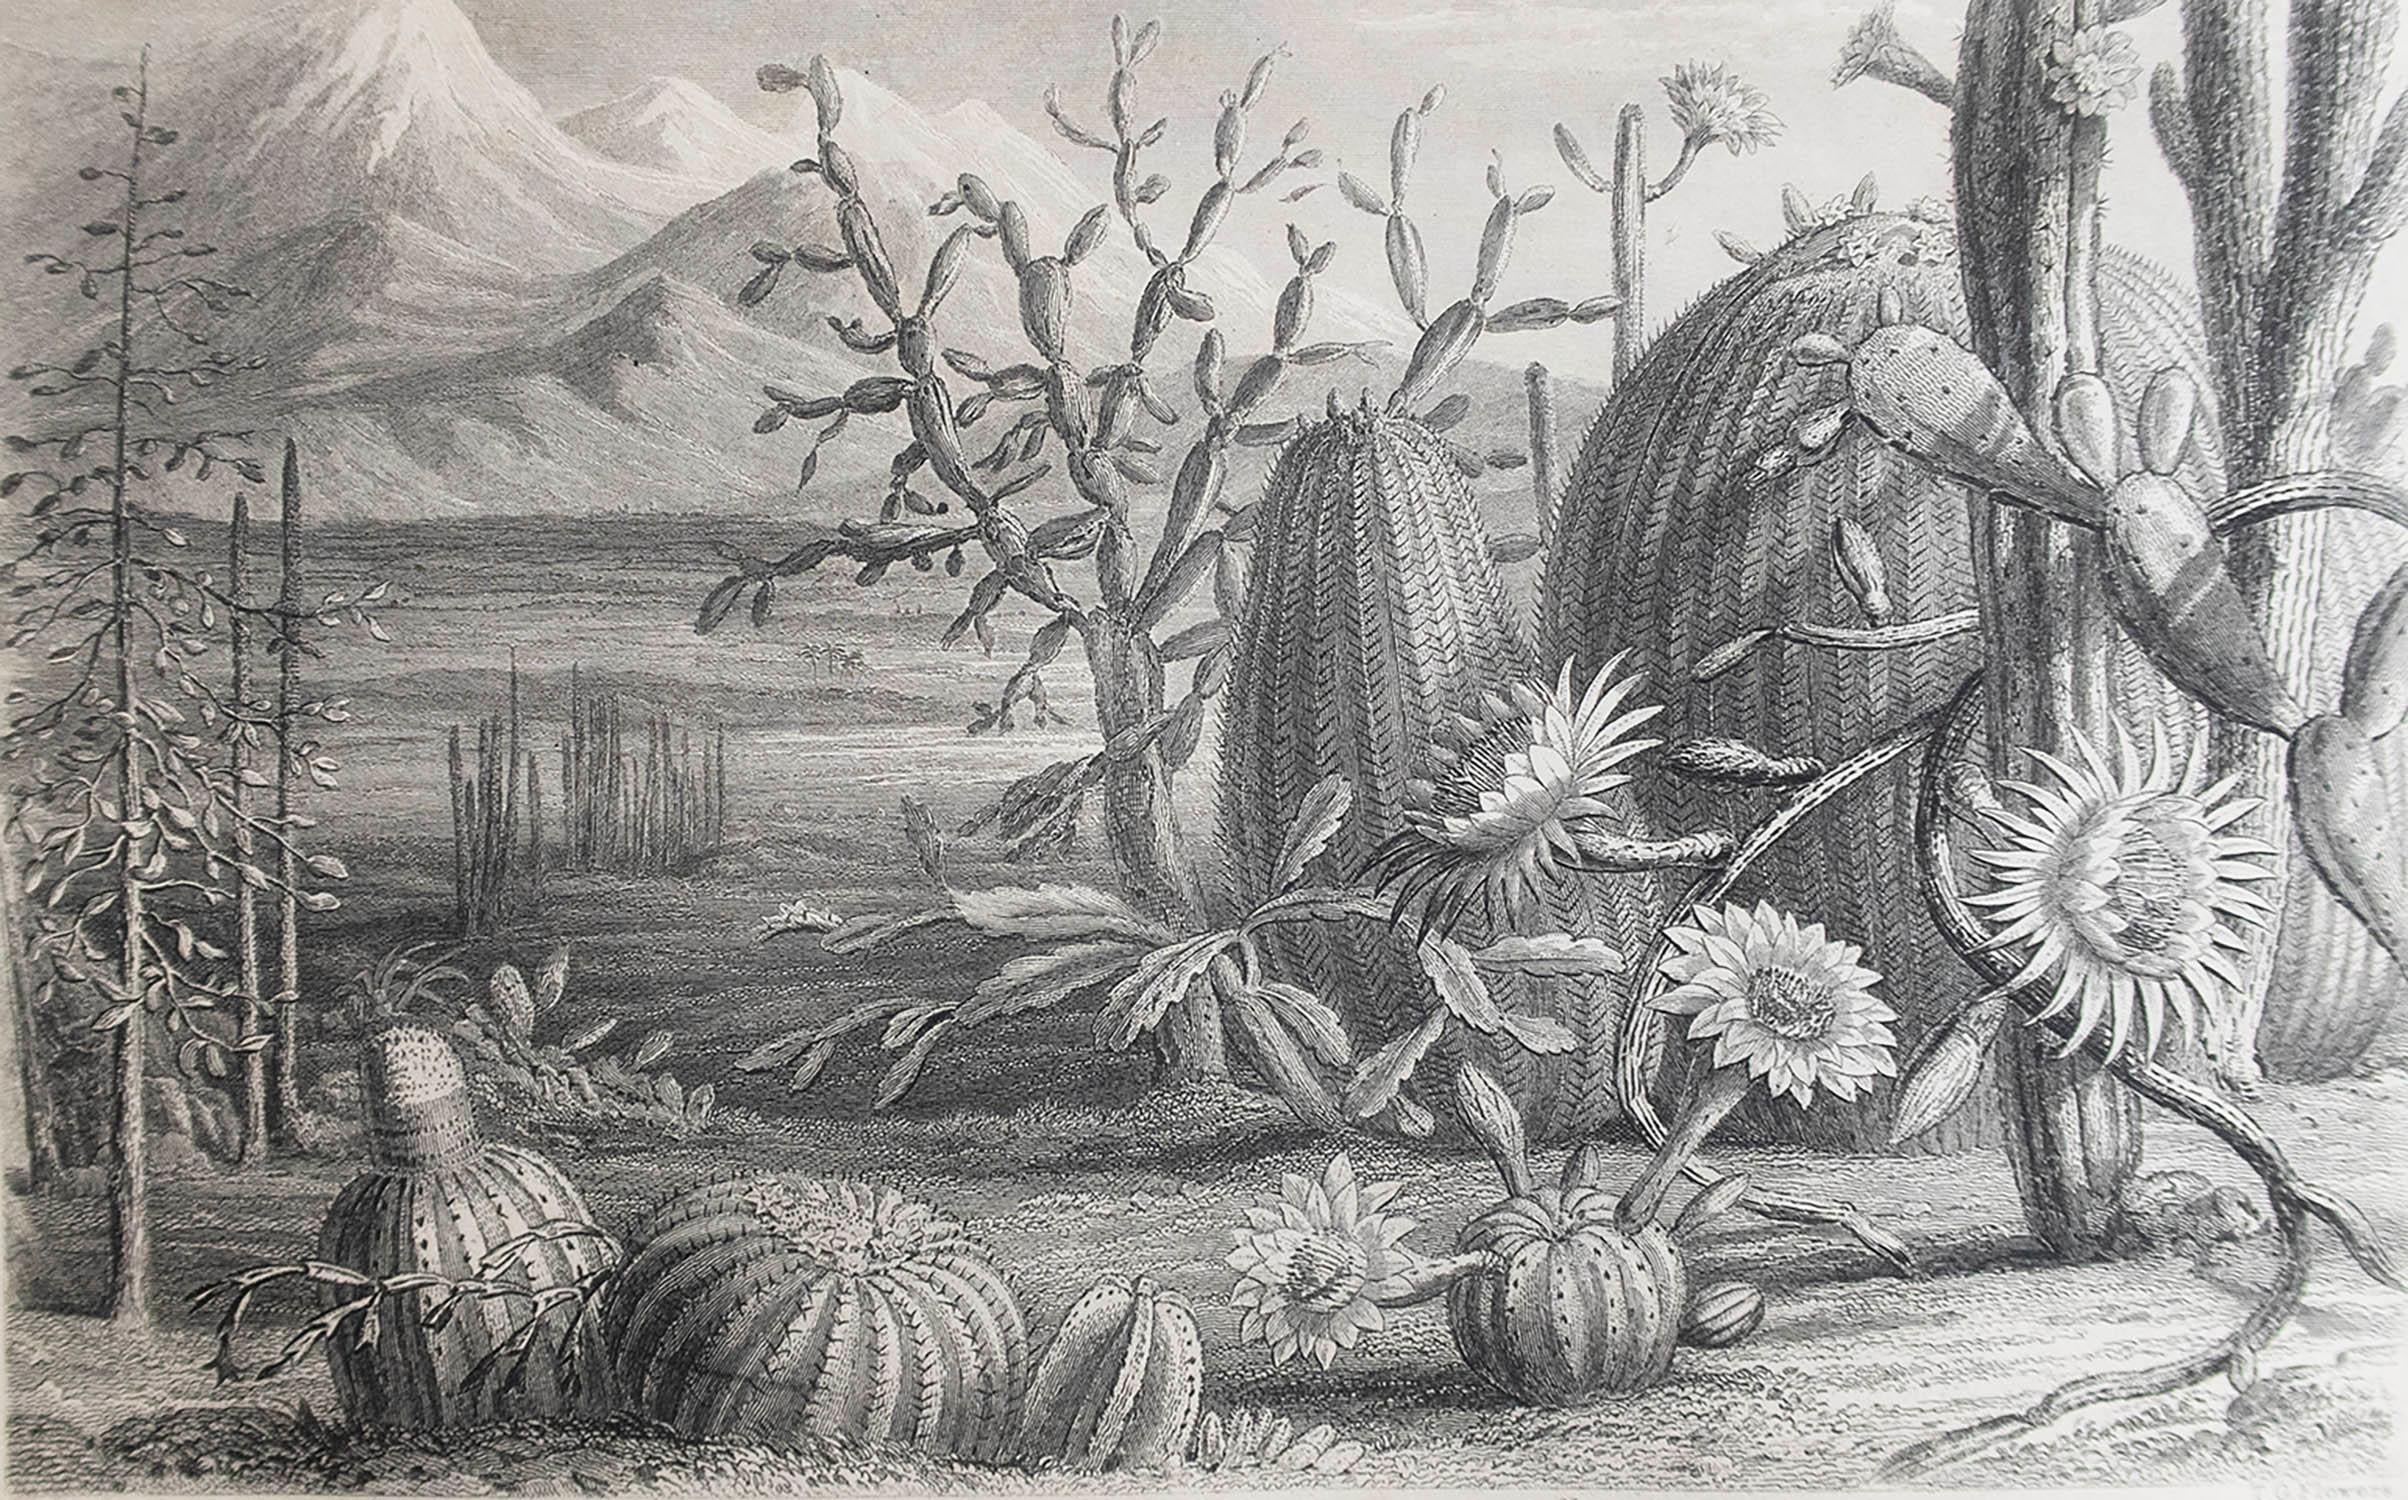 Belle image de cactus

Gravure sur acier par Flowers d'après W.Fitch

Publié par Blackie. C.1870

Non encadré.

Livraison gratuite.